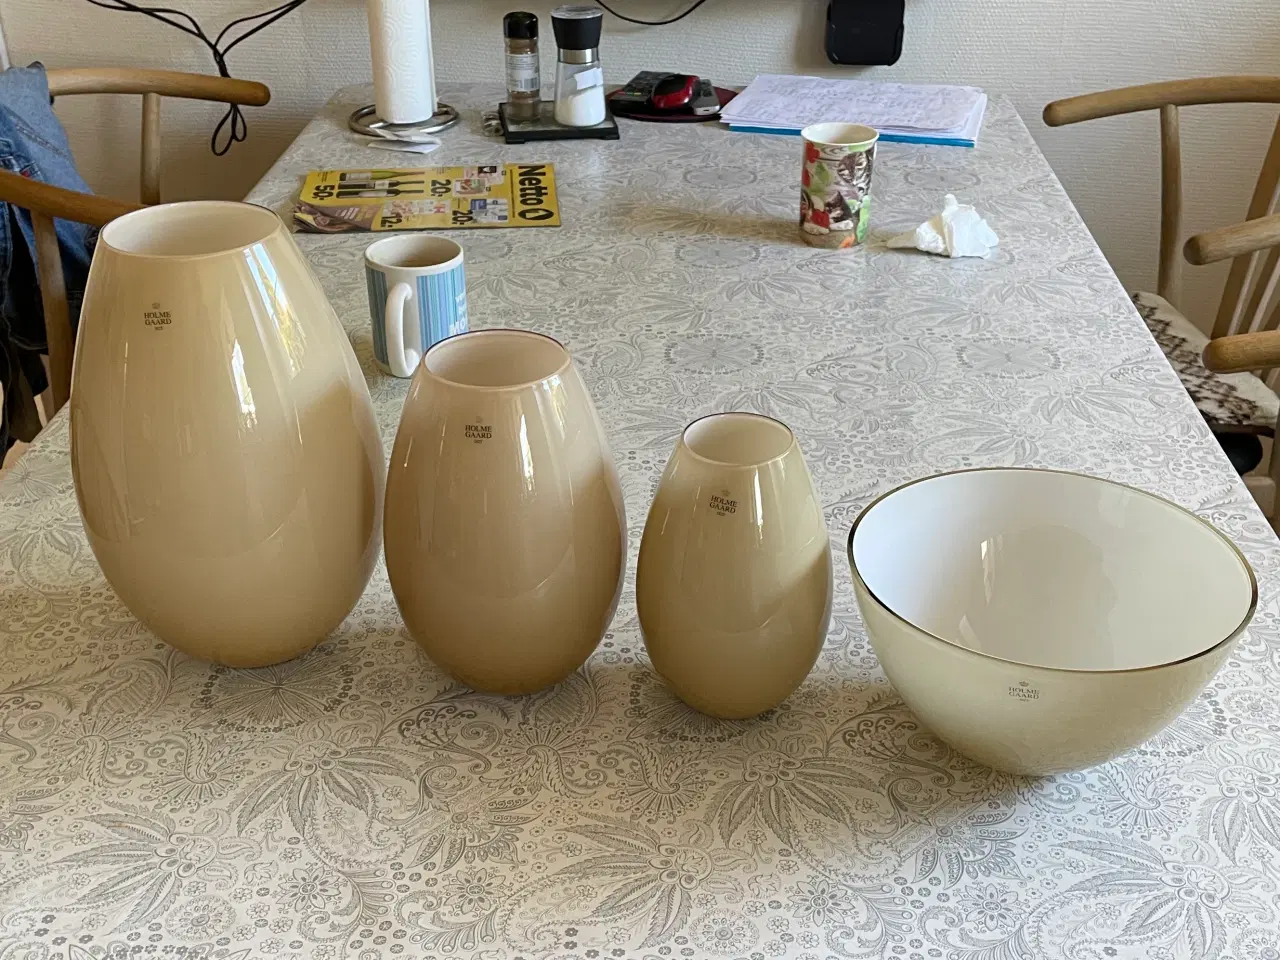 Billede 1 - Holmegård.  3 cocon vaser.og 1 skål